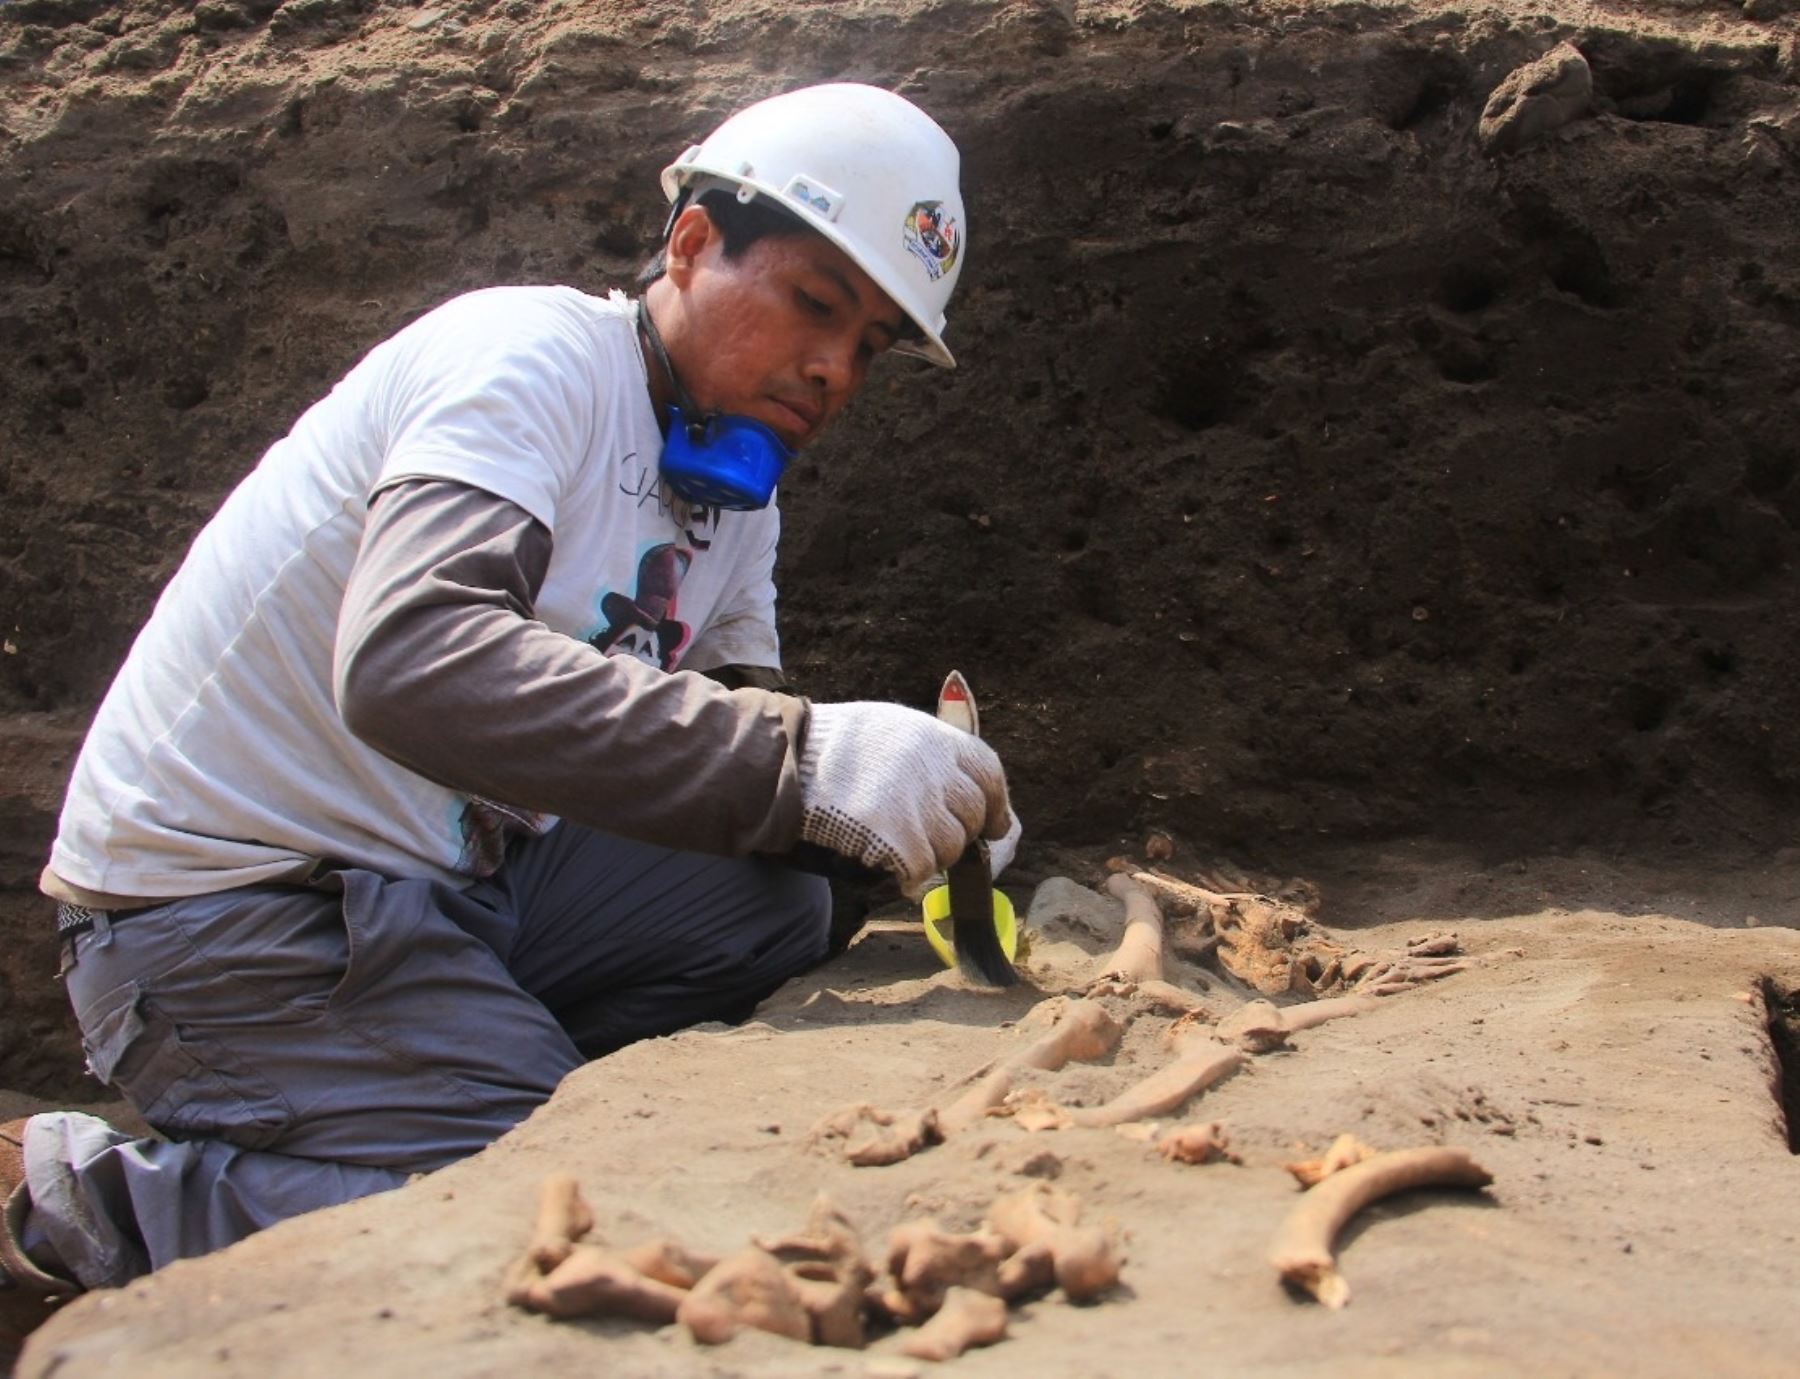 Un total de 6,442 metros cuadrados fueron excavados durante los trabajos de rescate arqueológico que se efectuaron en el sitio arqueológico Pampa La Cruz, ubicado en Huanchaco, provincia de Trujillo. Foto: Luis Puell